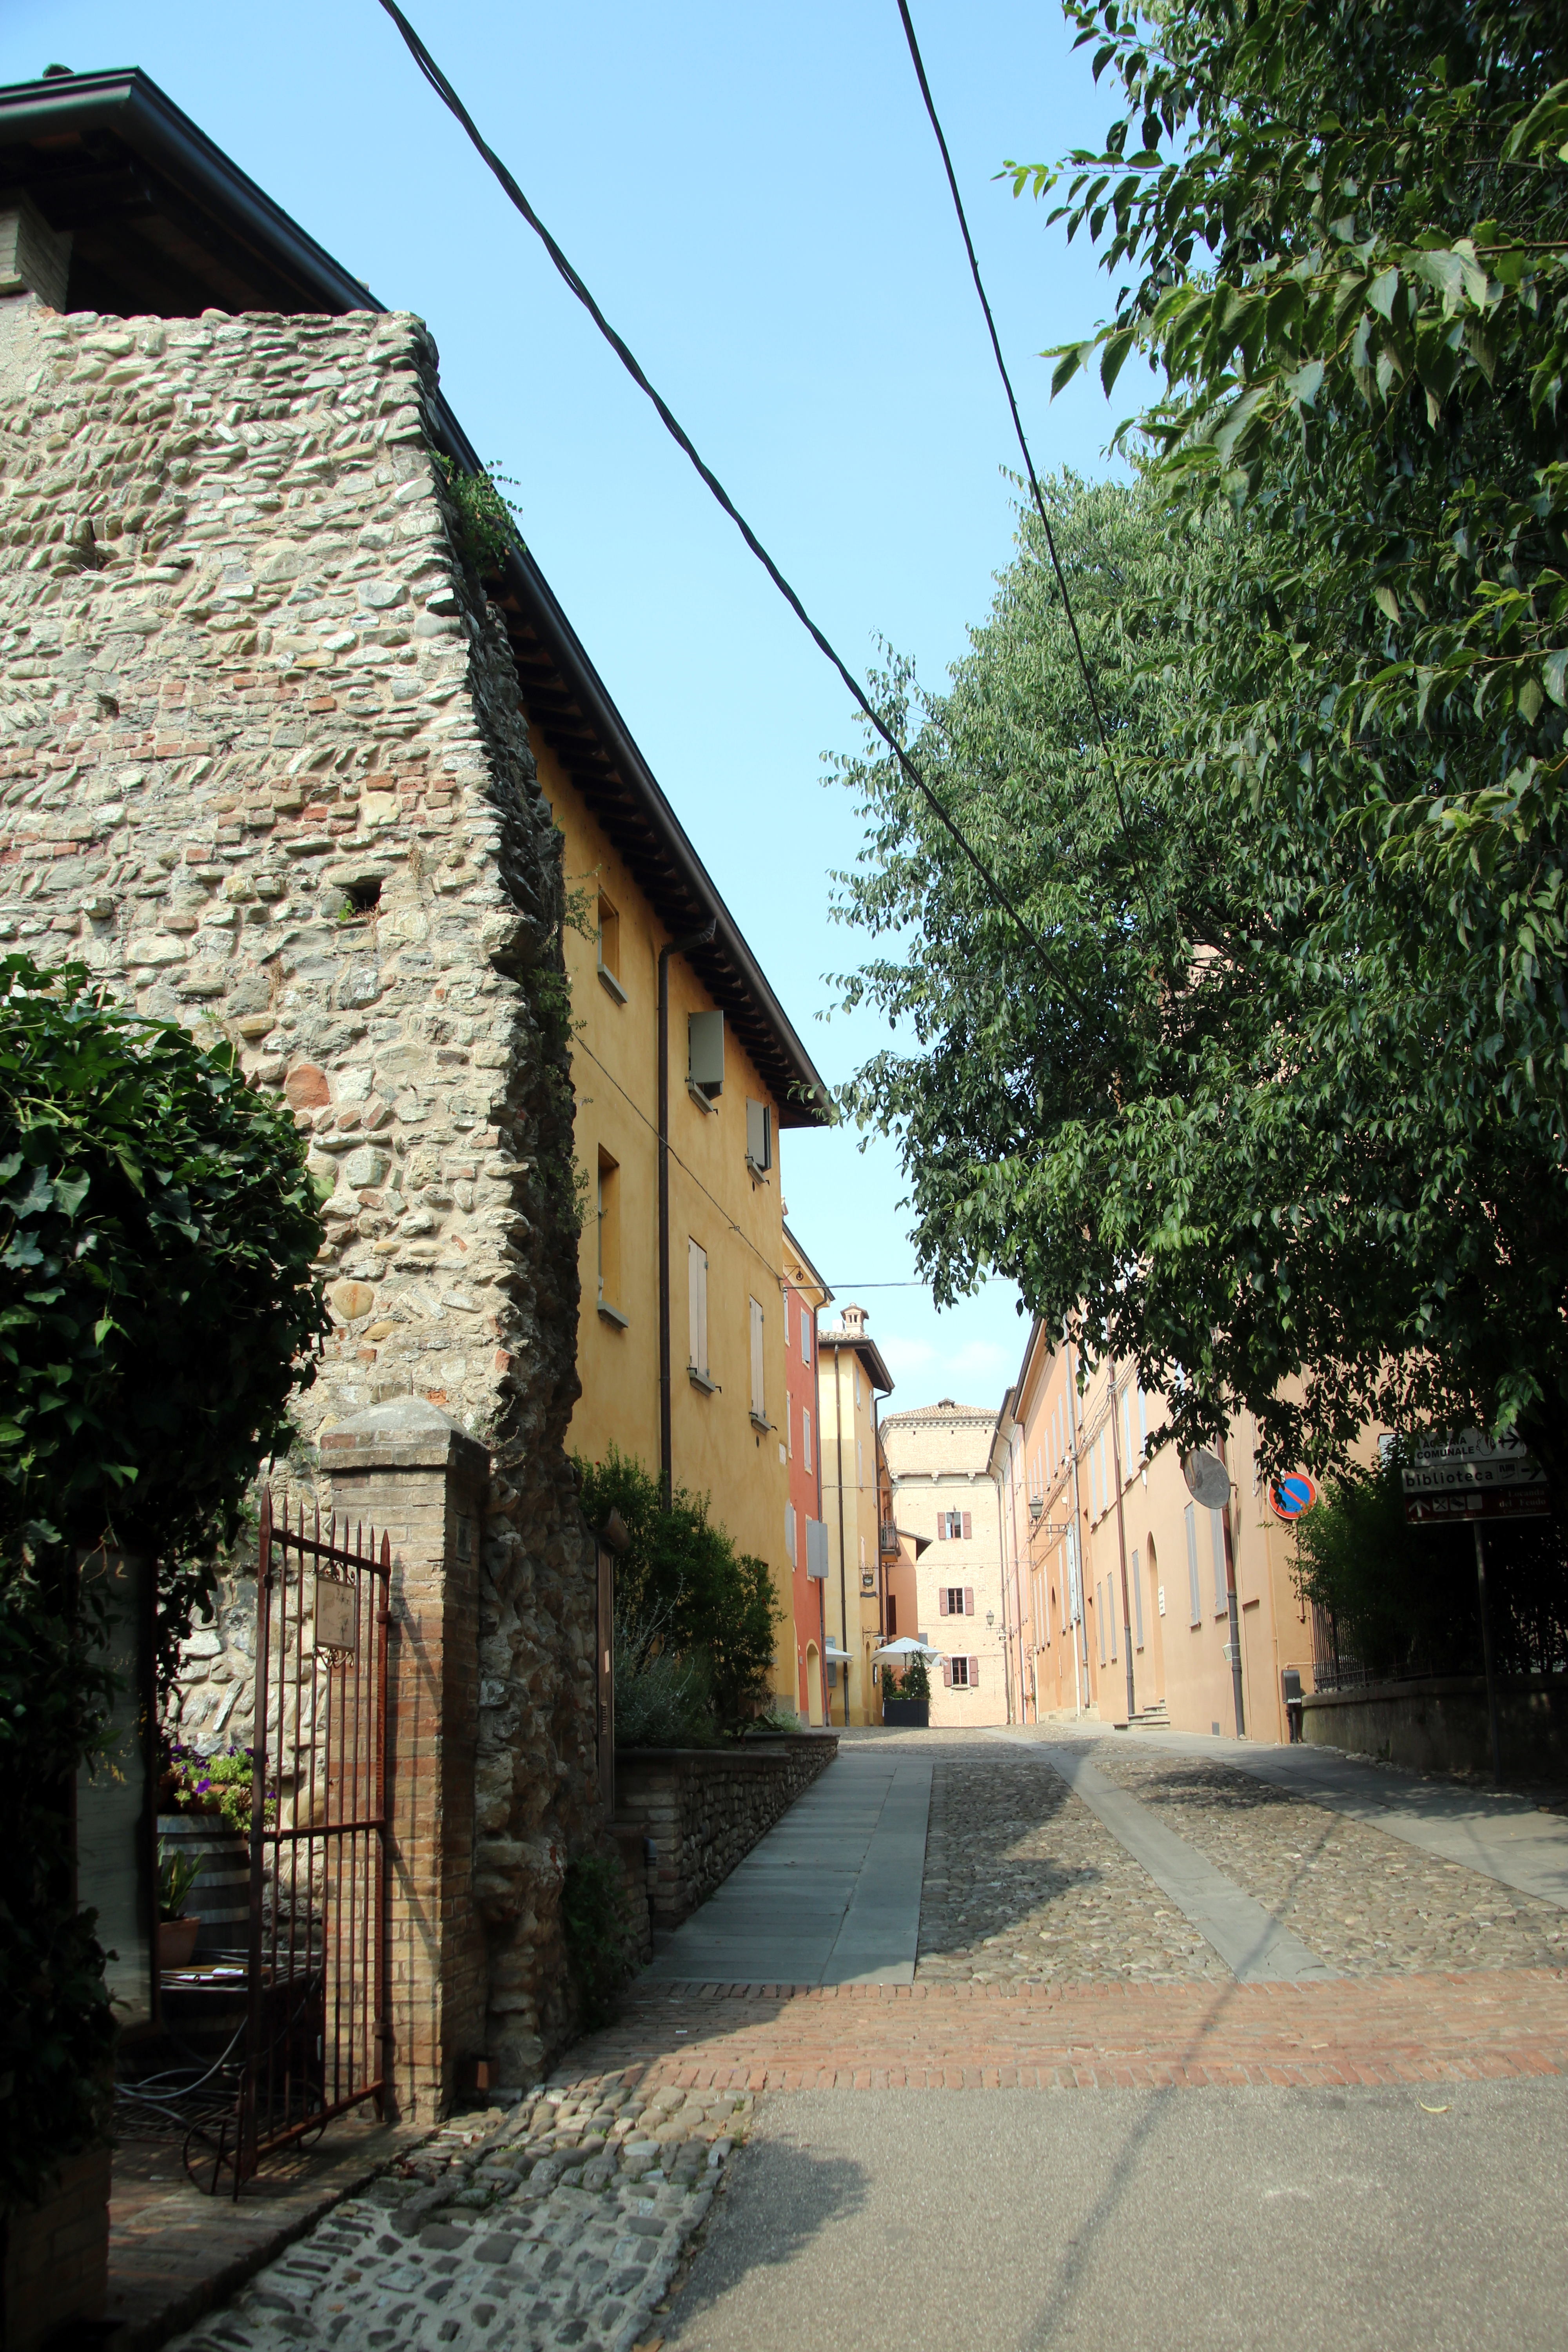 foto: https://upload.wikimedia.org/wikipedia/commons/6/6e/Antiche_mura_di_Castelvetro_di_Modena_02.jpg